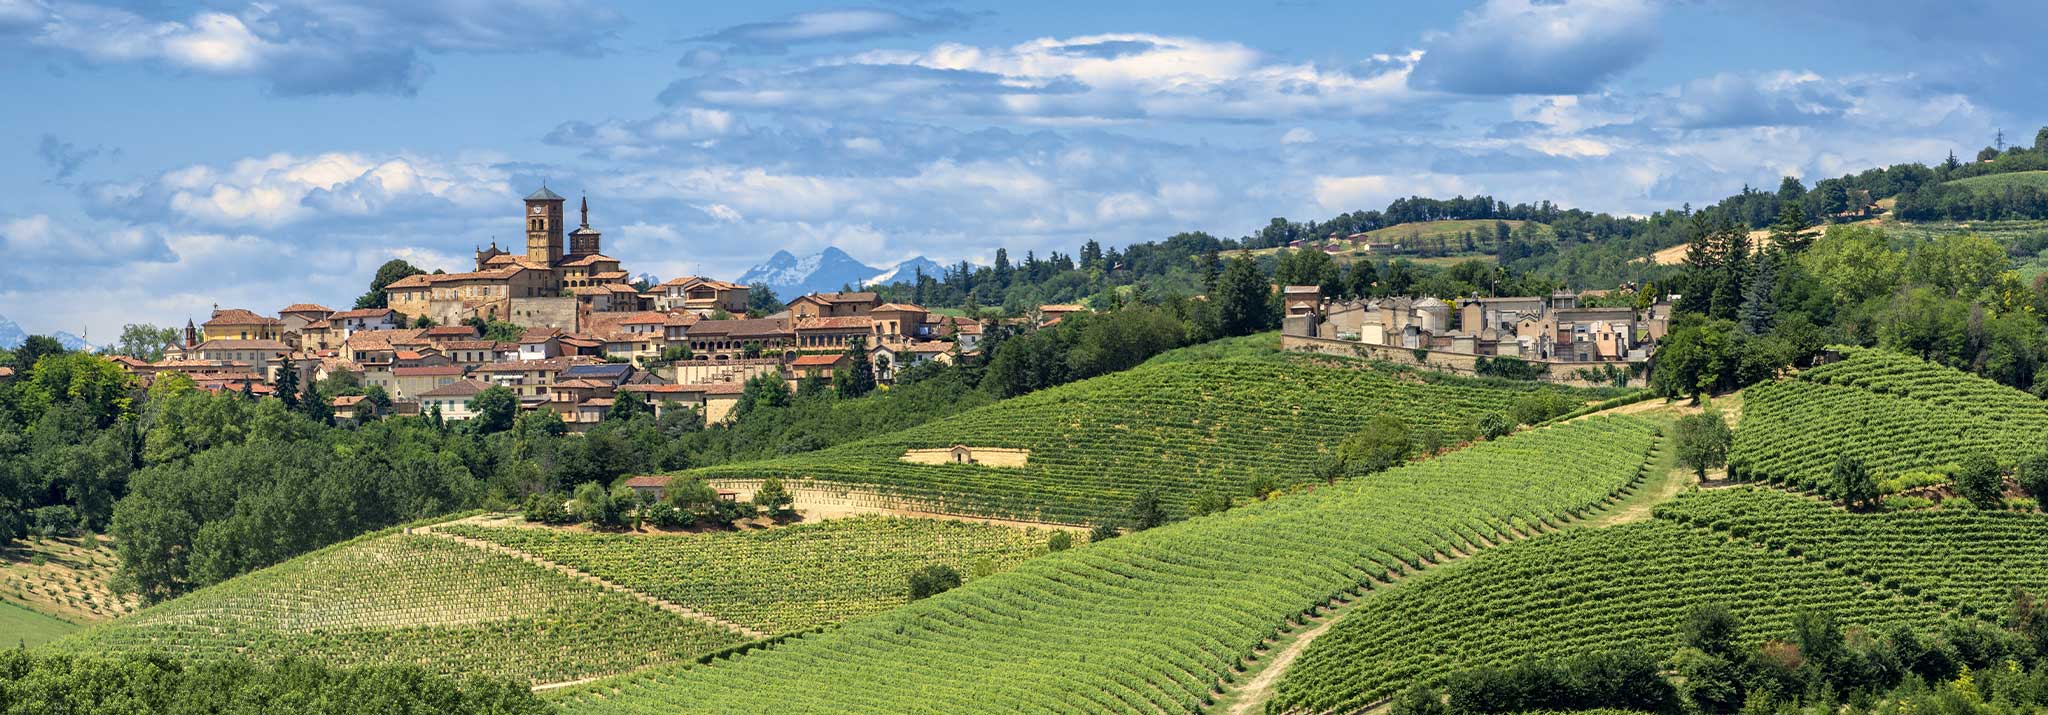 monferrato-italy-landscape-gaudio-wine-barbera